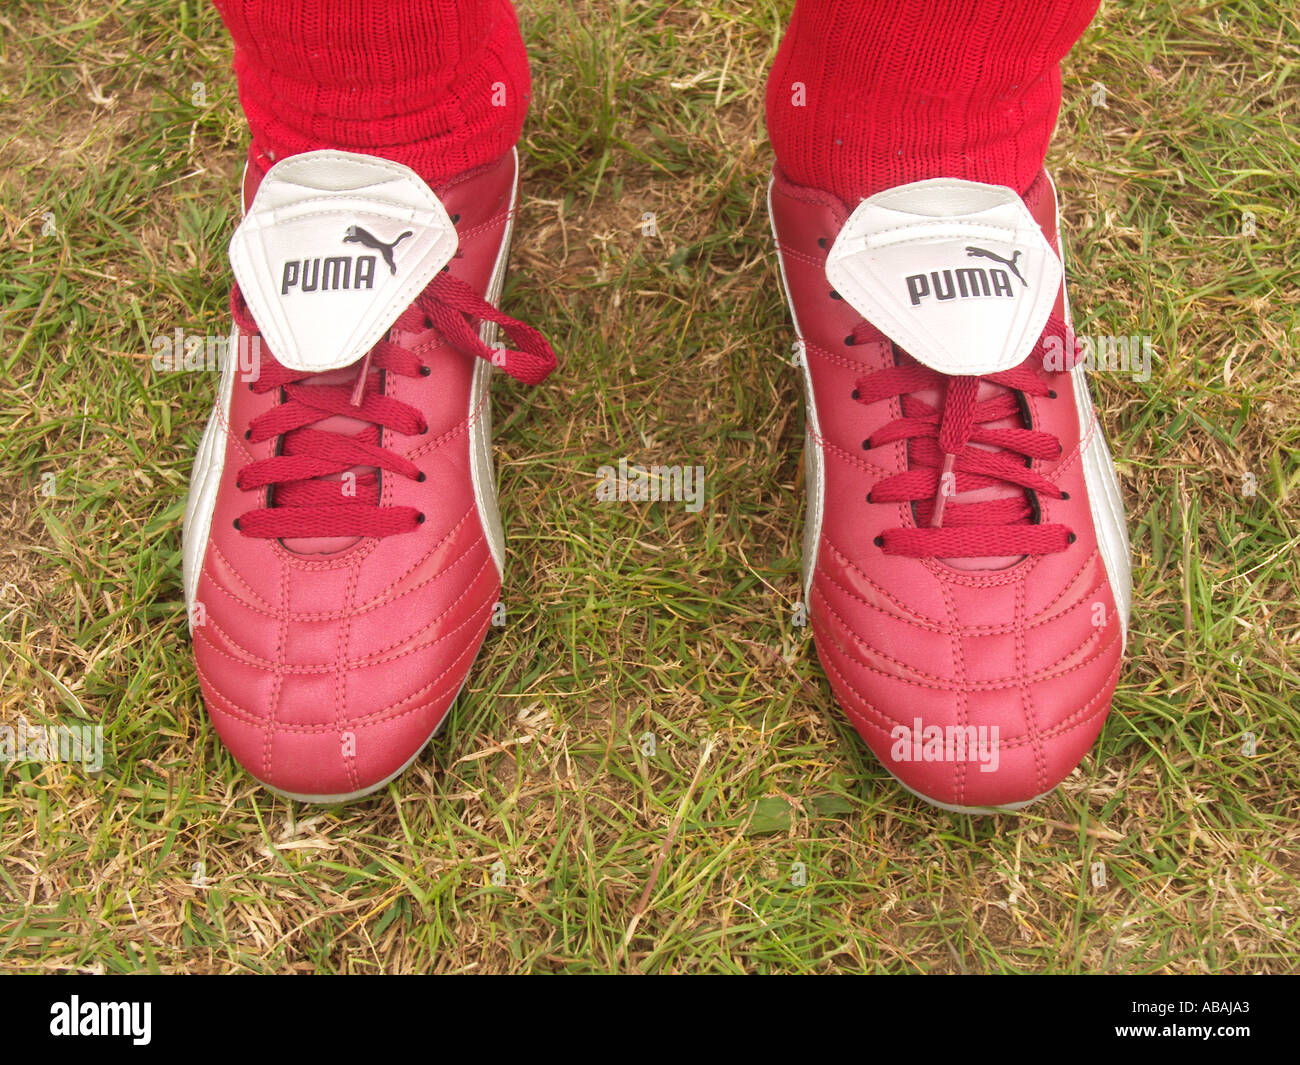 Neue rote Puma Fußballschuhe und rote Socken getragen von Kind  Stockfotografie - Alamy